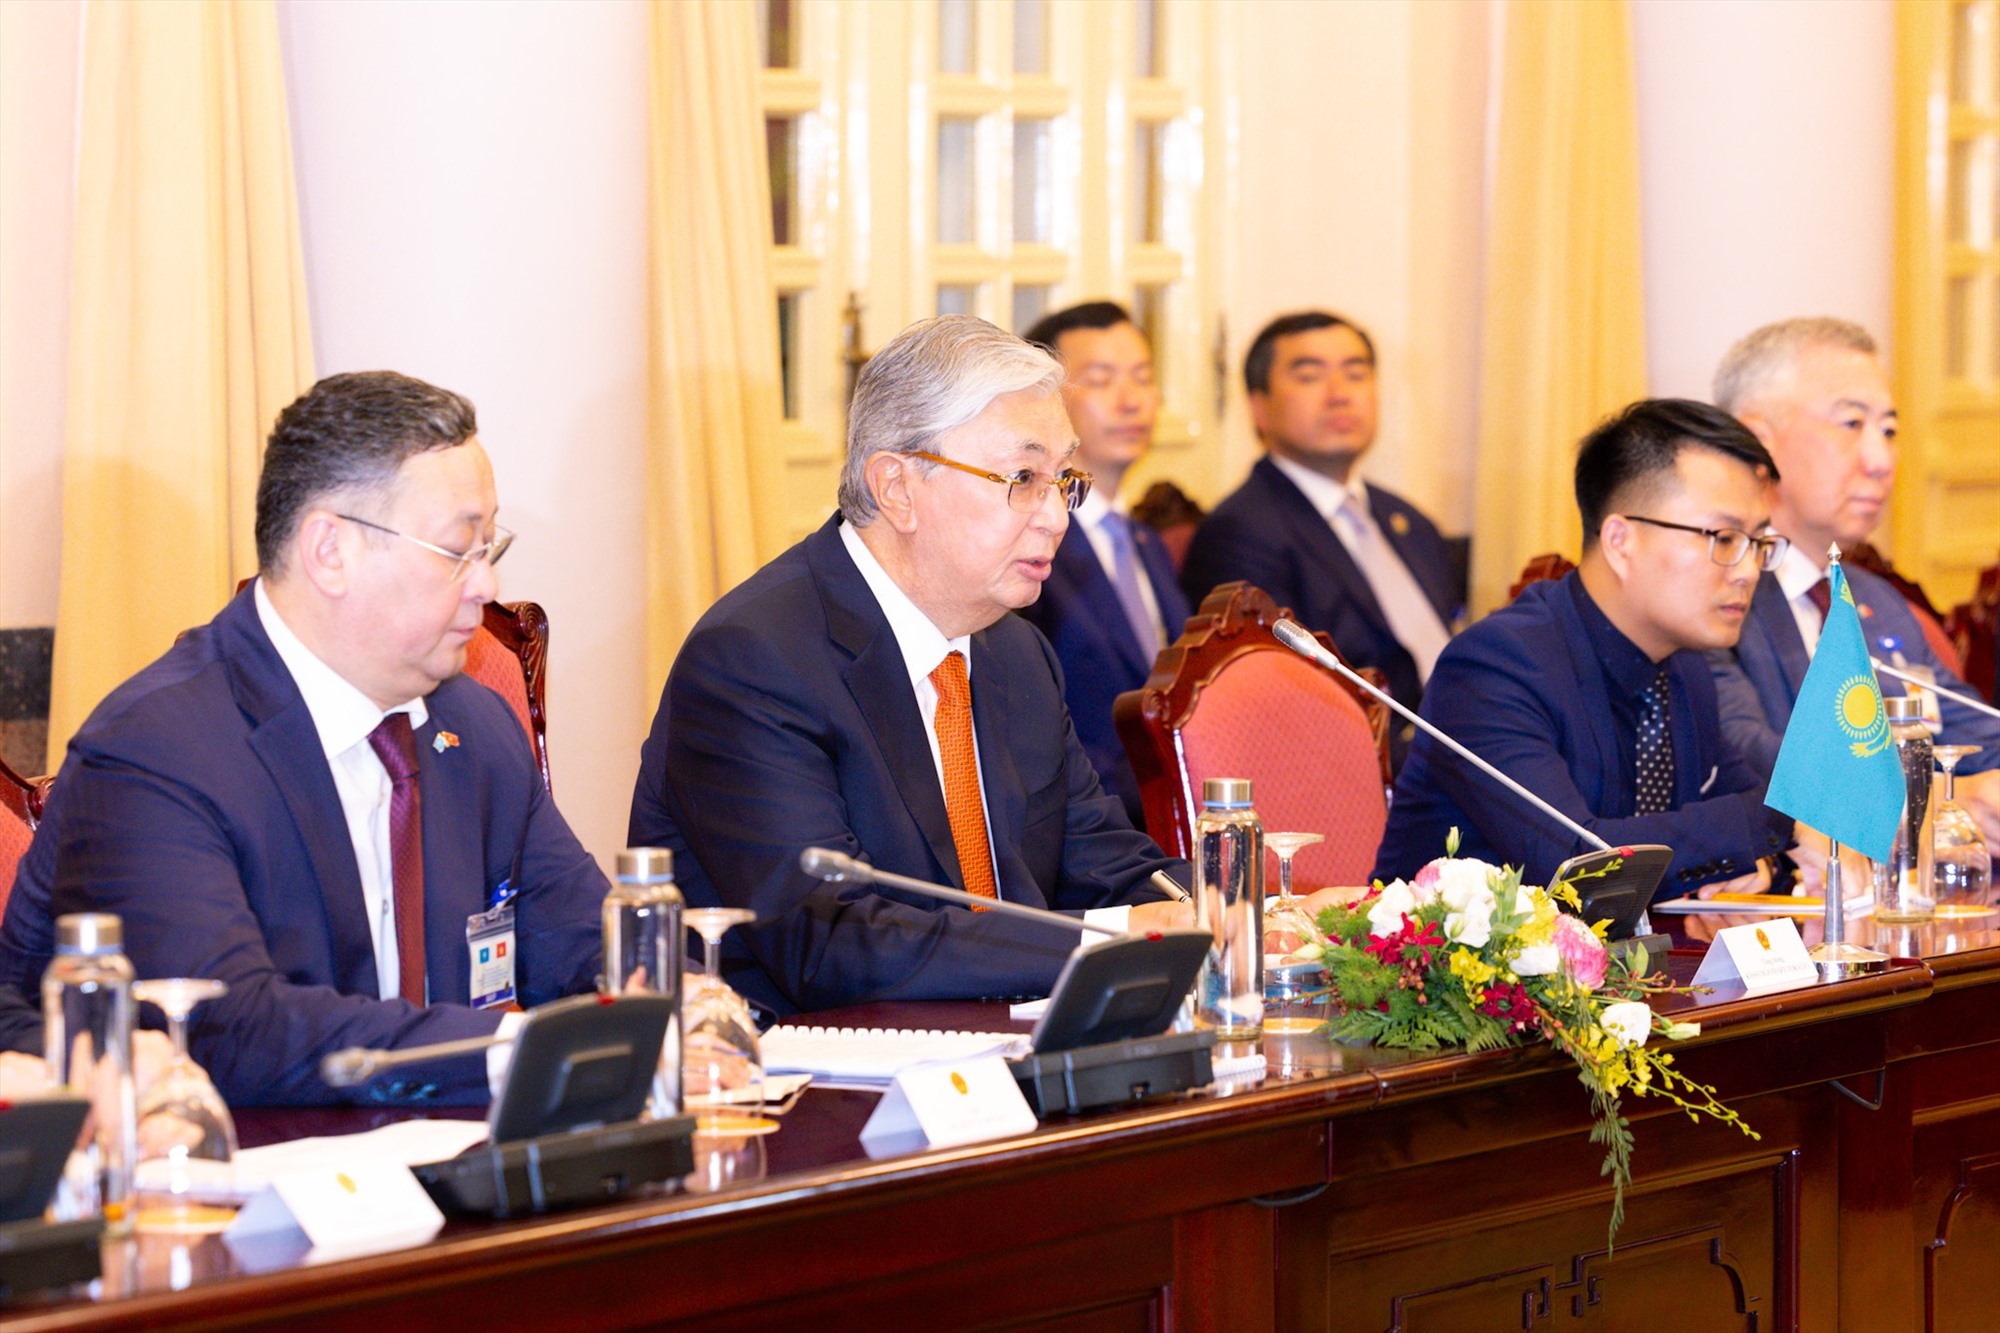 Đây là lần đầu tiên ông Kassym-Jomart Tokayev đến Việt Nam trên cương vị mới, cũng là chuyến thăm đầu tiên của một Tổng thống Kazakhstan trong 12 năm qua.